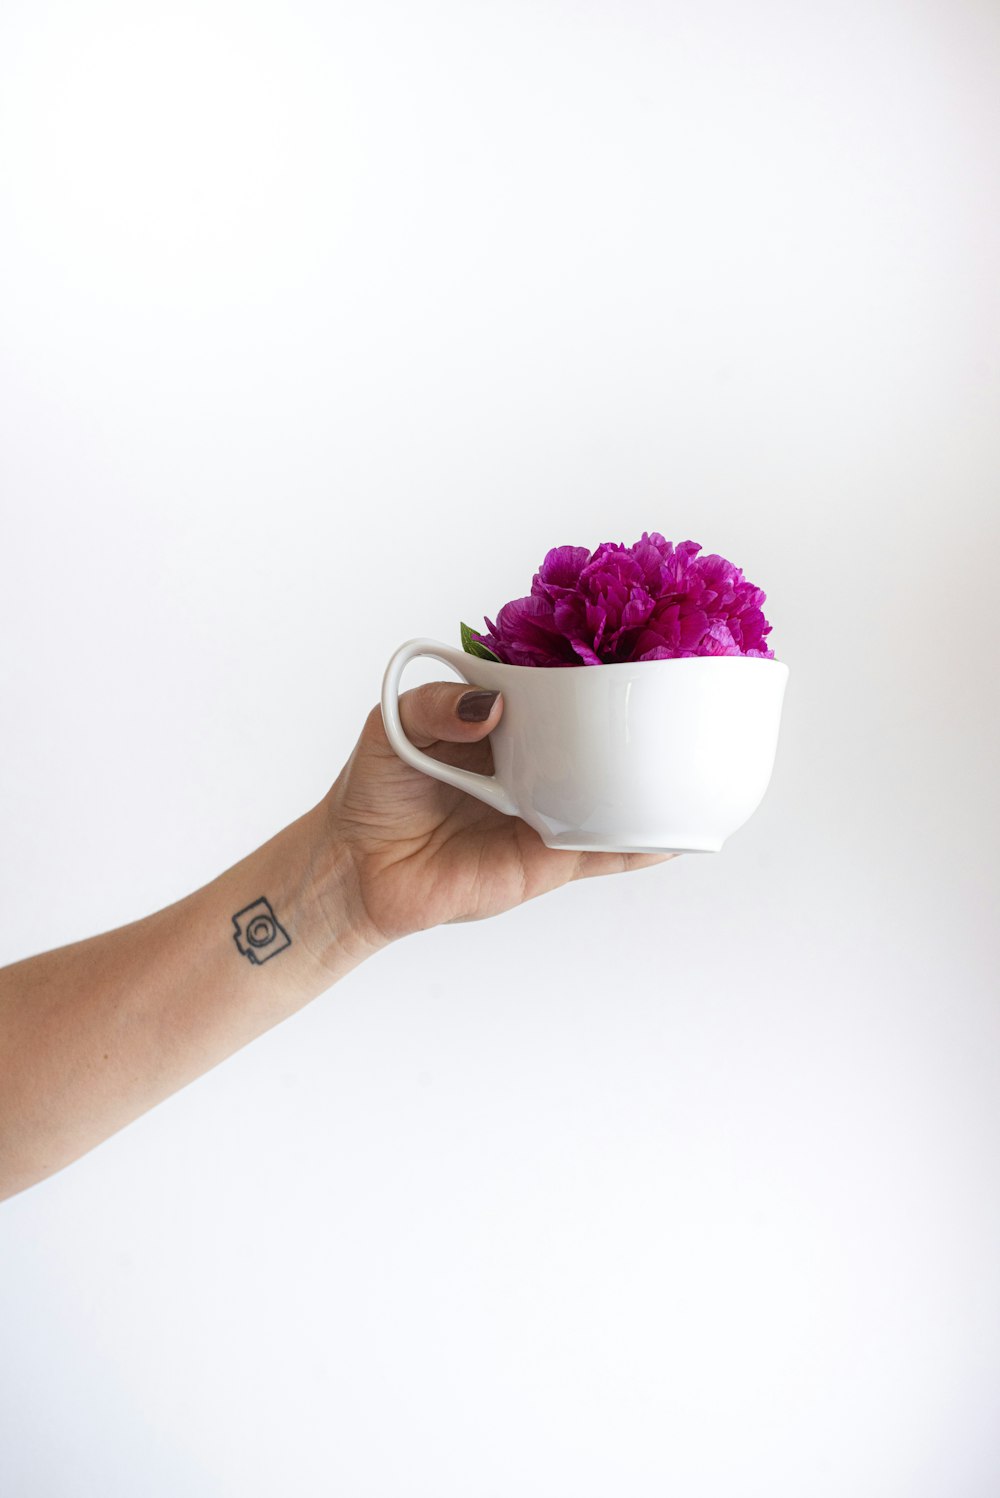 Persona sosteniendo una taza de cerámica blanca con flores rosas